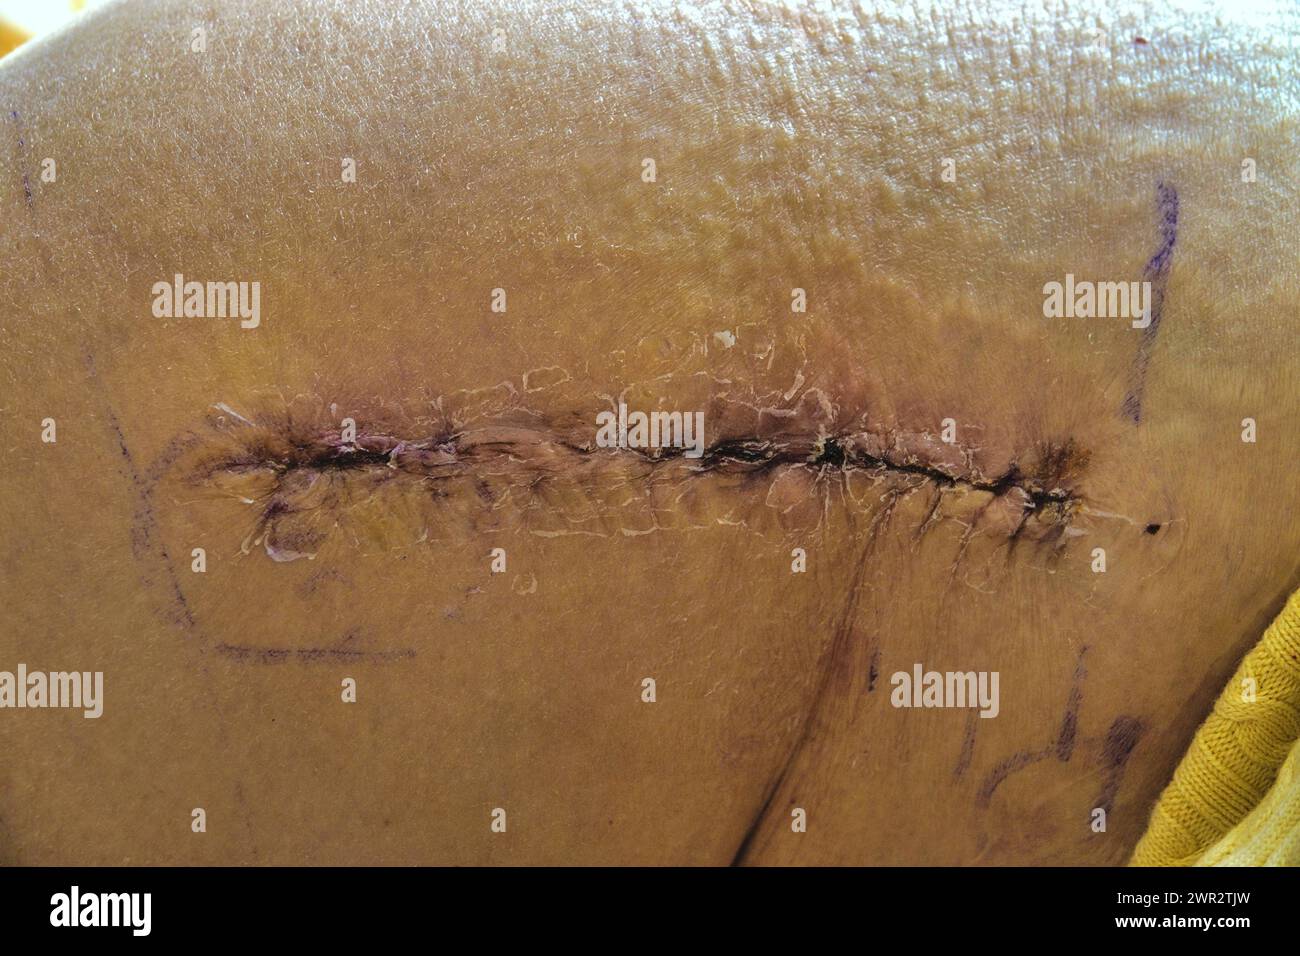 Cicatrice post intervento dopo intervento chirurgico di sostituzione dell'anca (femmina) Foto Stock